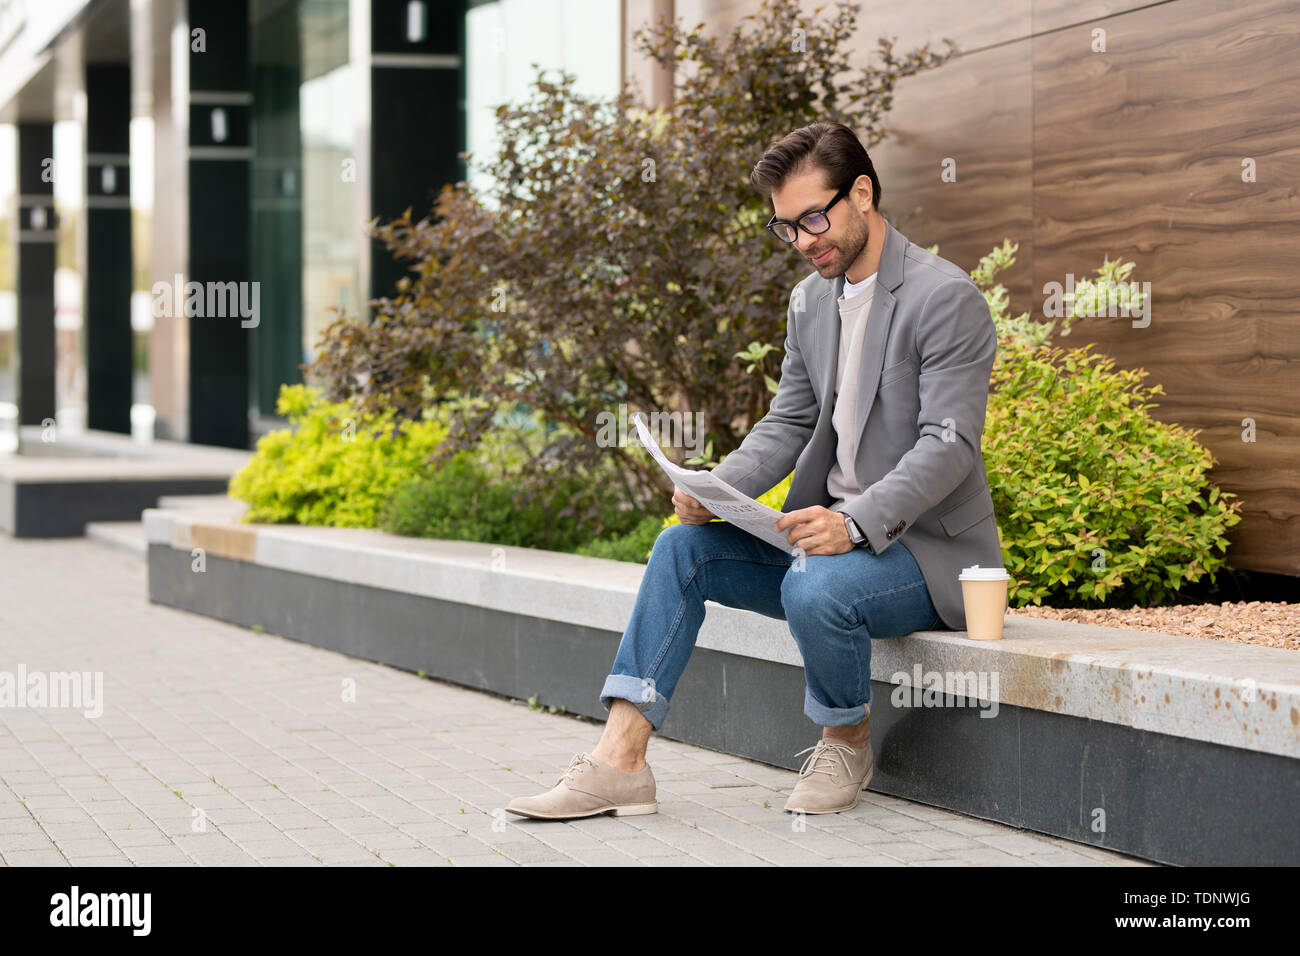 Il giovane imprenditore in smart casual seduta in ambiente urbano e guardando attraverso il giornale con notizie fresche Foto Stock